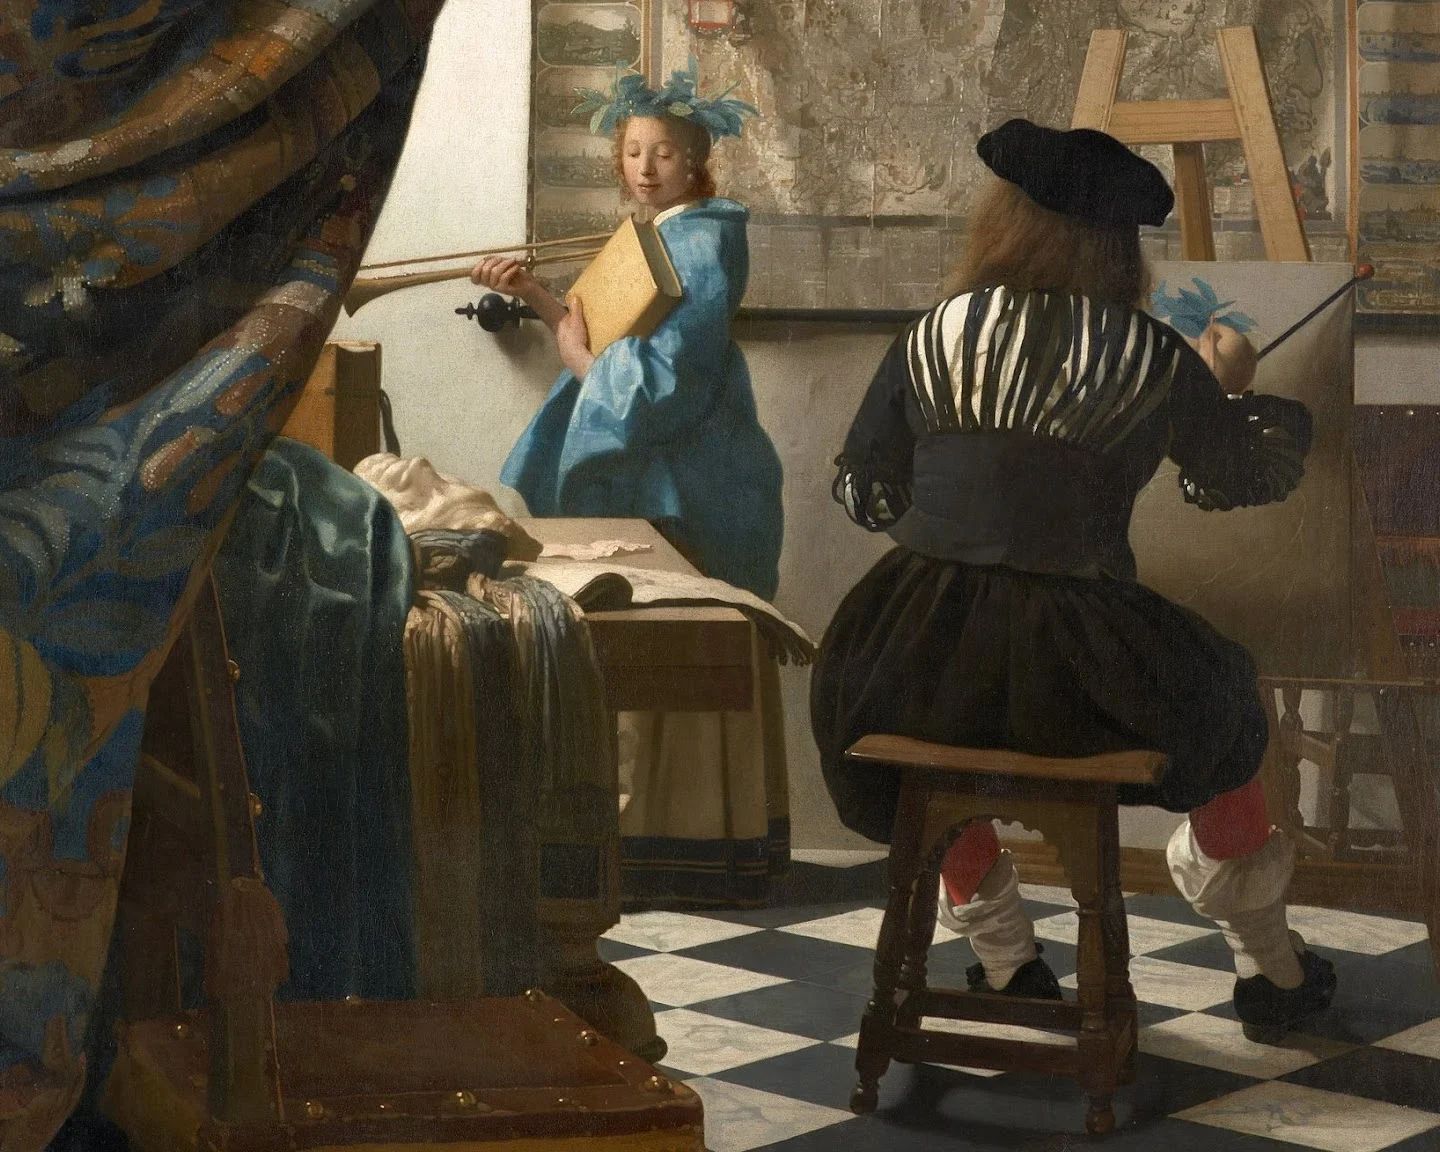 La Obra de Vermeer: El Maestro del Claroscuro en la Pintura del Siglo de Oro holandés